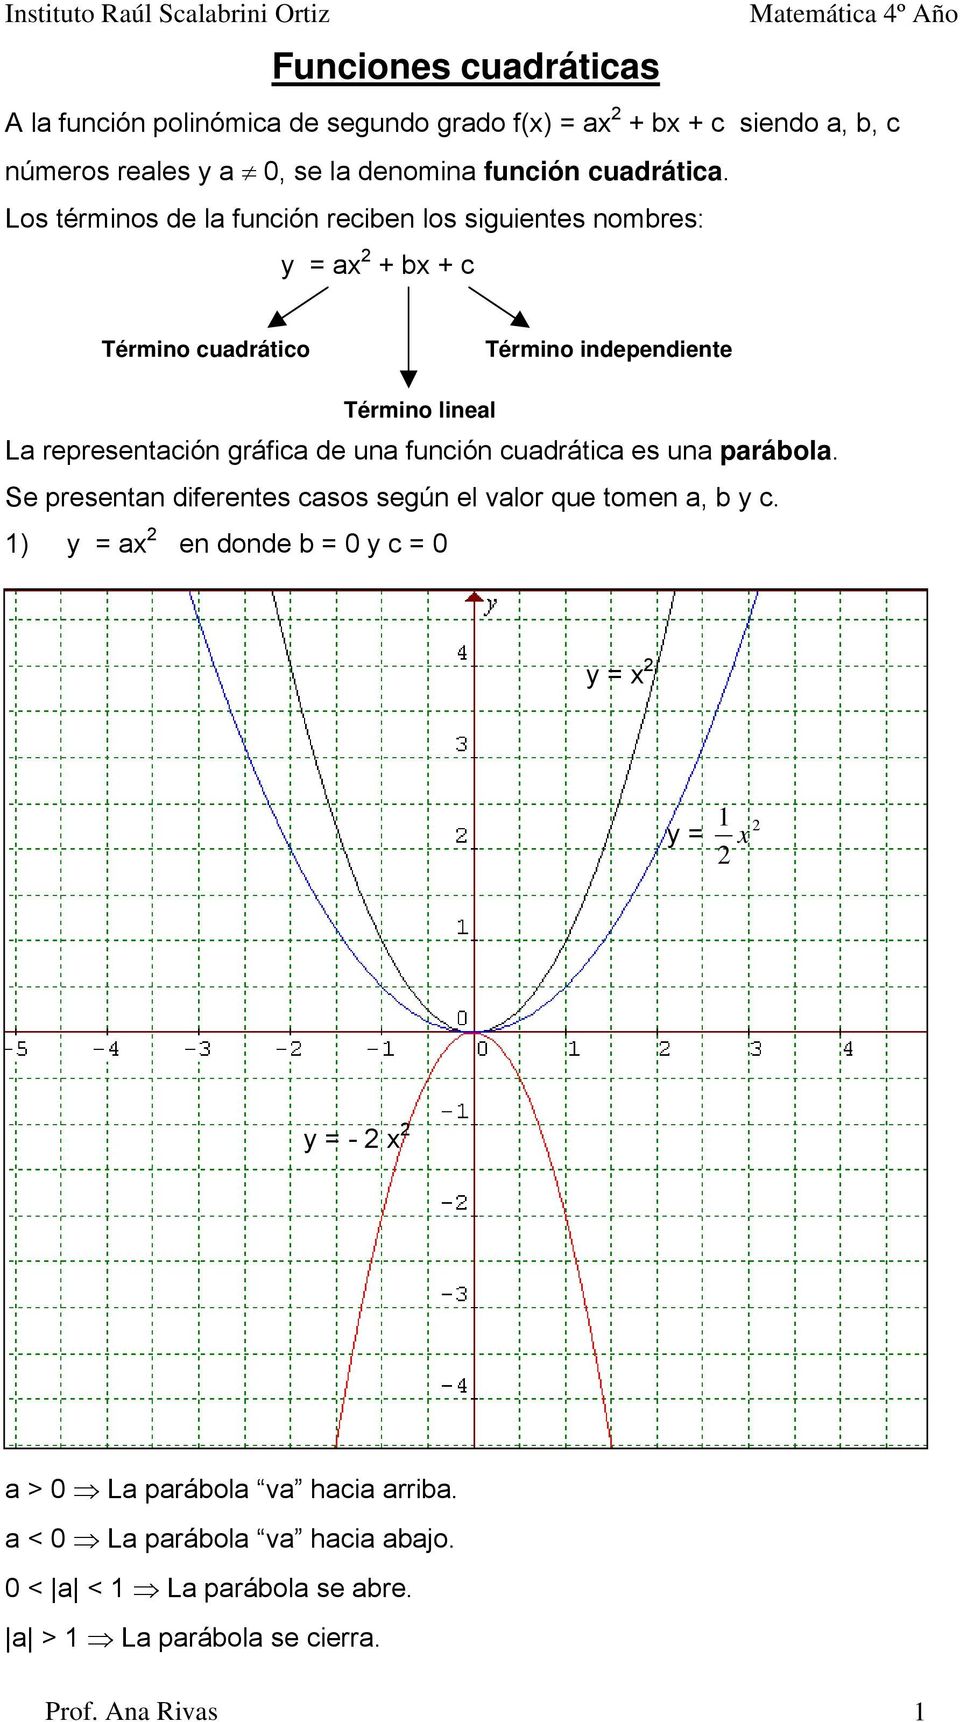 Los términos de l función reciben los siguientes nombres: y + b + c Término cudrático Término independiente Término linel L